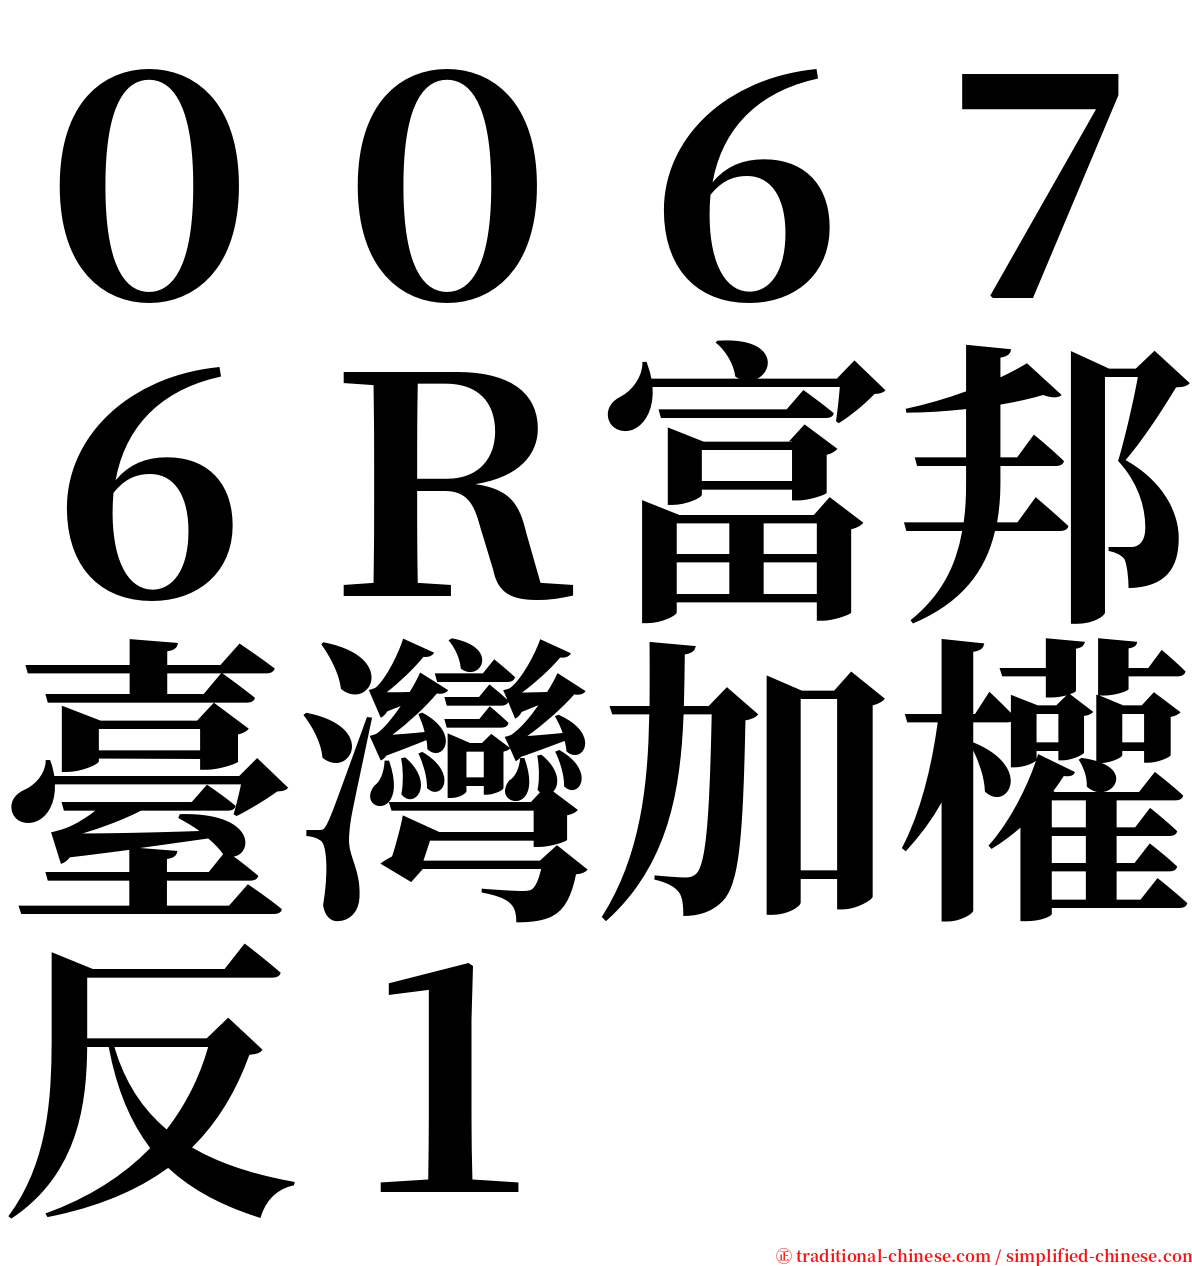 ００６７６Ｒ富邦臺灣加權反１ serif font